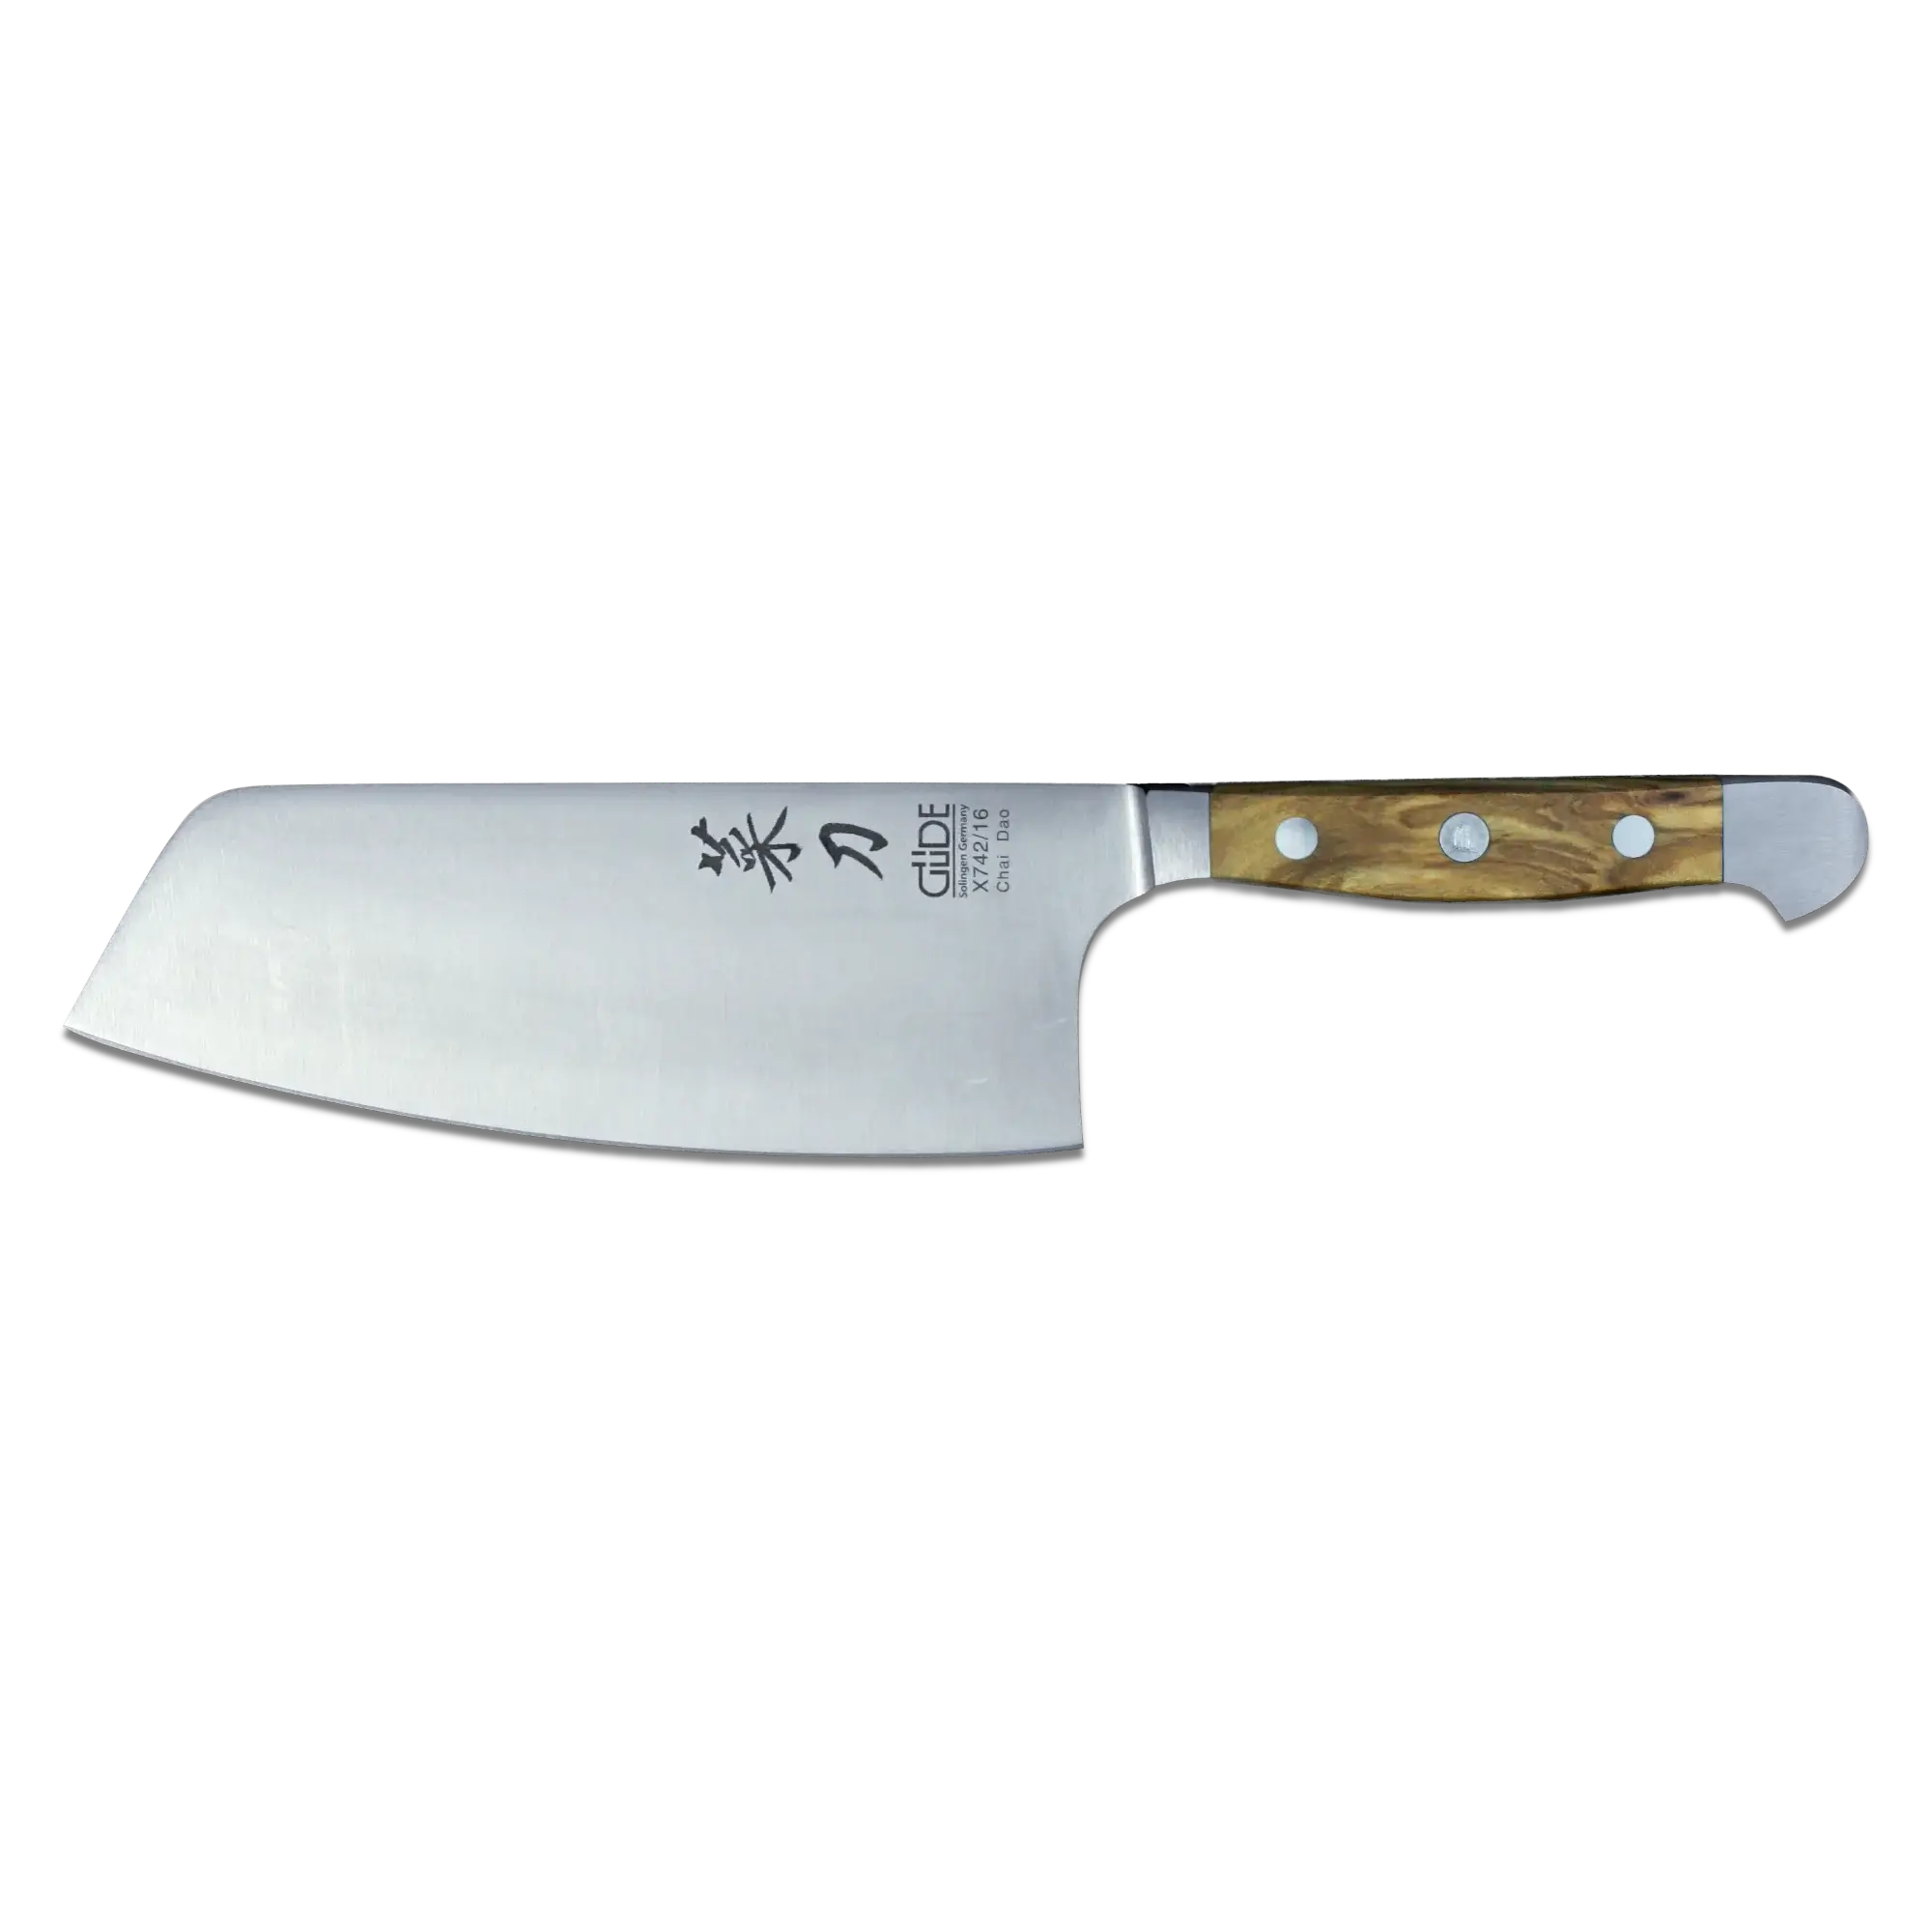 OLIVE ALPHA | Chai Dao Couteau de chef chinois 6 1/2" Lame | Acier forgé/manche en bois d'olivier